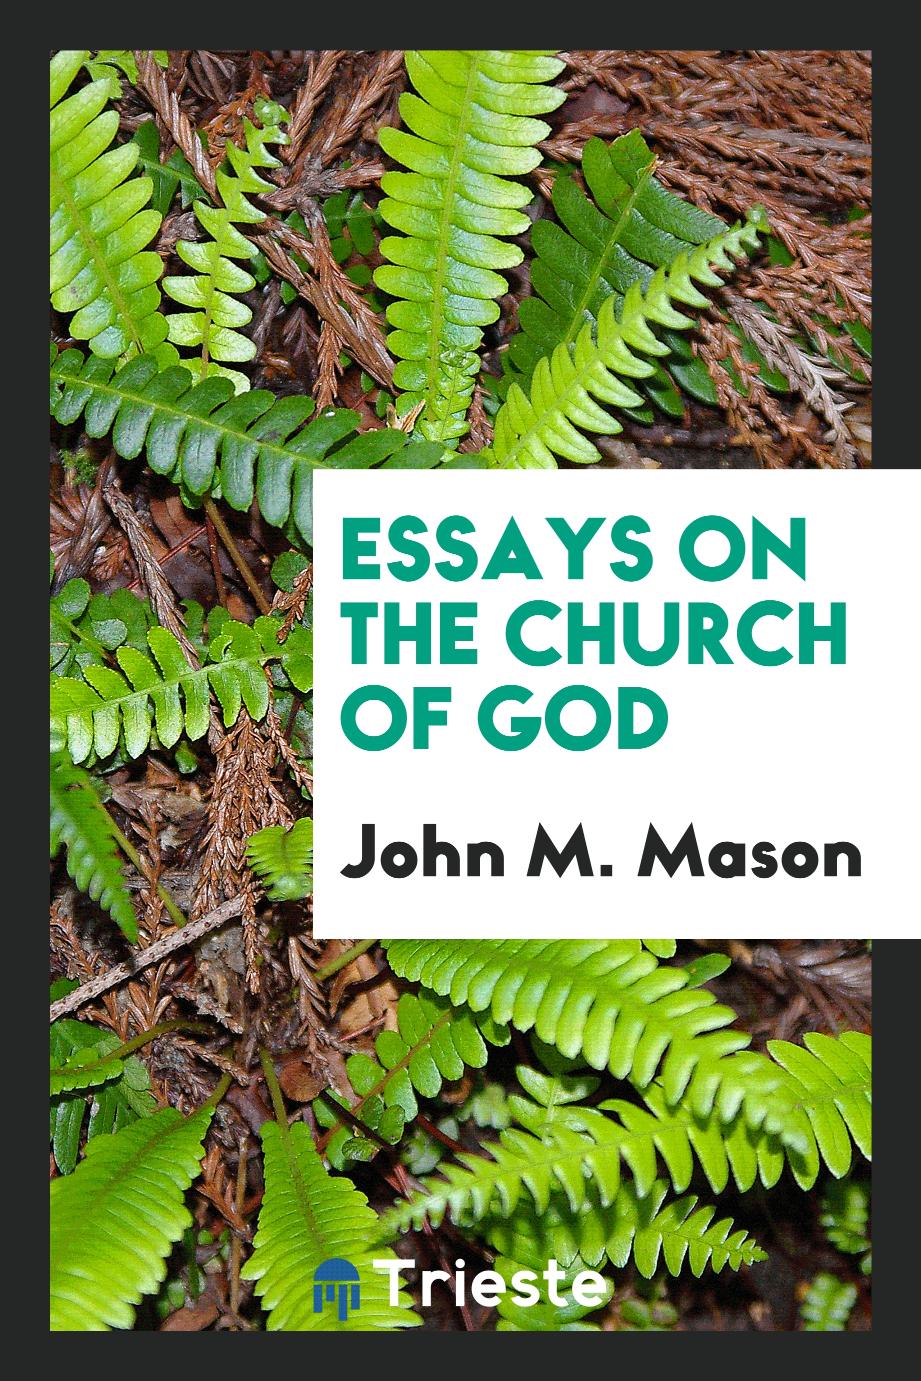 Essays on the church of God